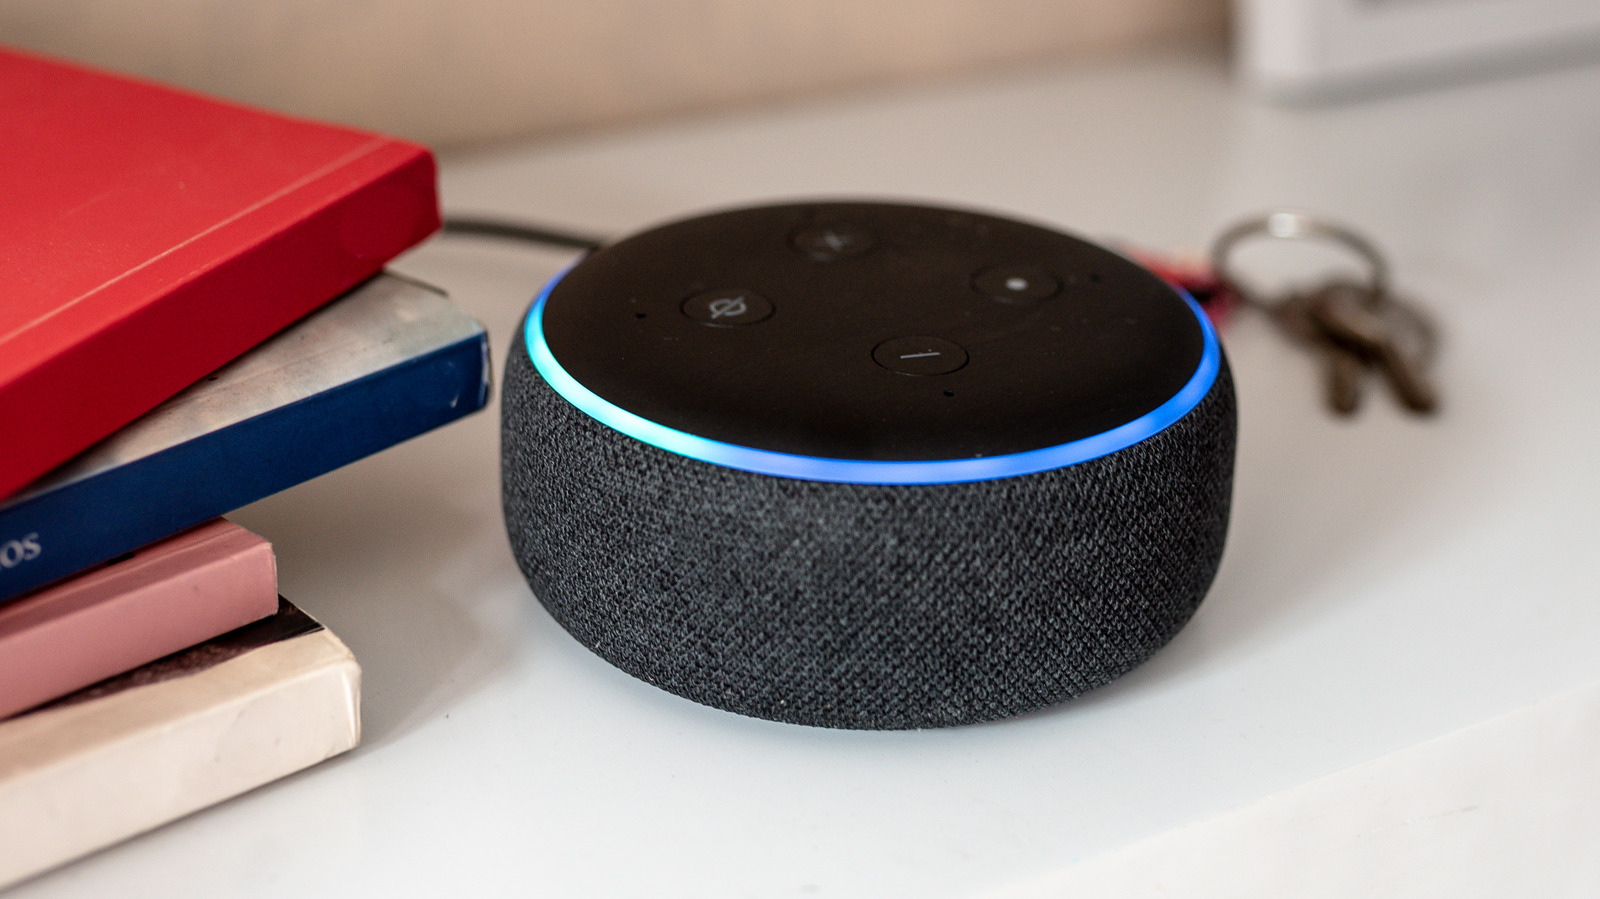 Cómo configurar tu Amazon Echo Dot: guía paso a paso